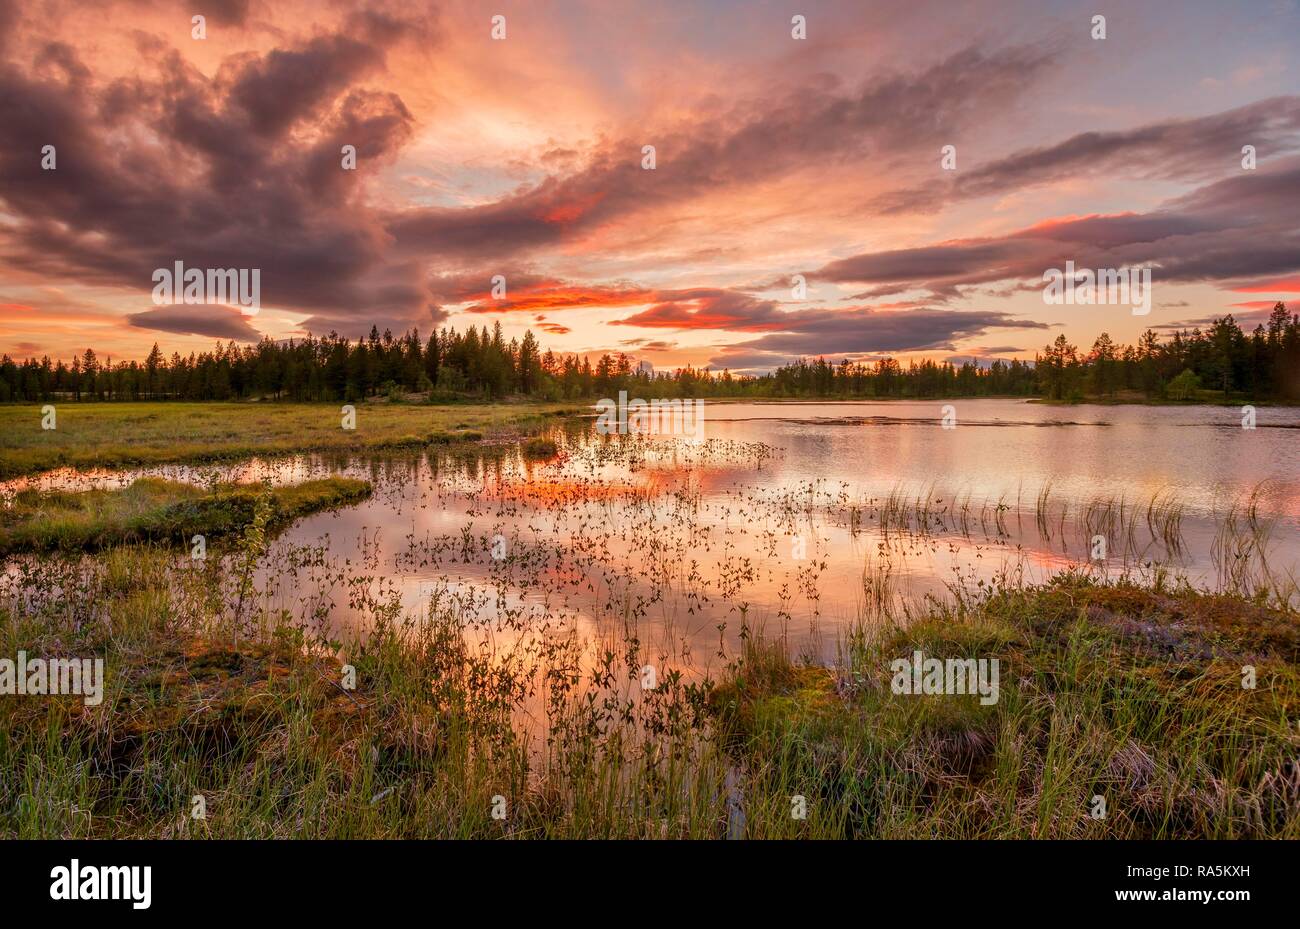 Nuages orange au coucher du soleil, reflétée dans le lac, les forêts, les milieux humides, le maure, Kittilä, Lappi, Finlande, Finlande Banque D'Images